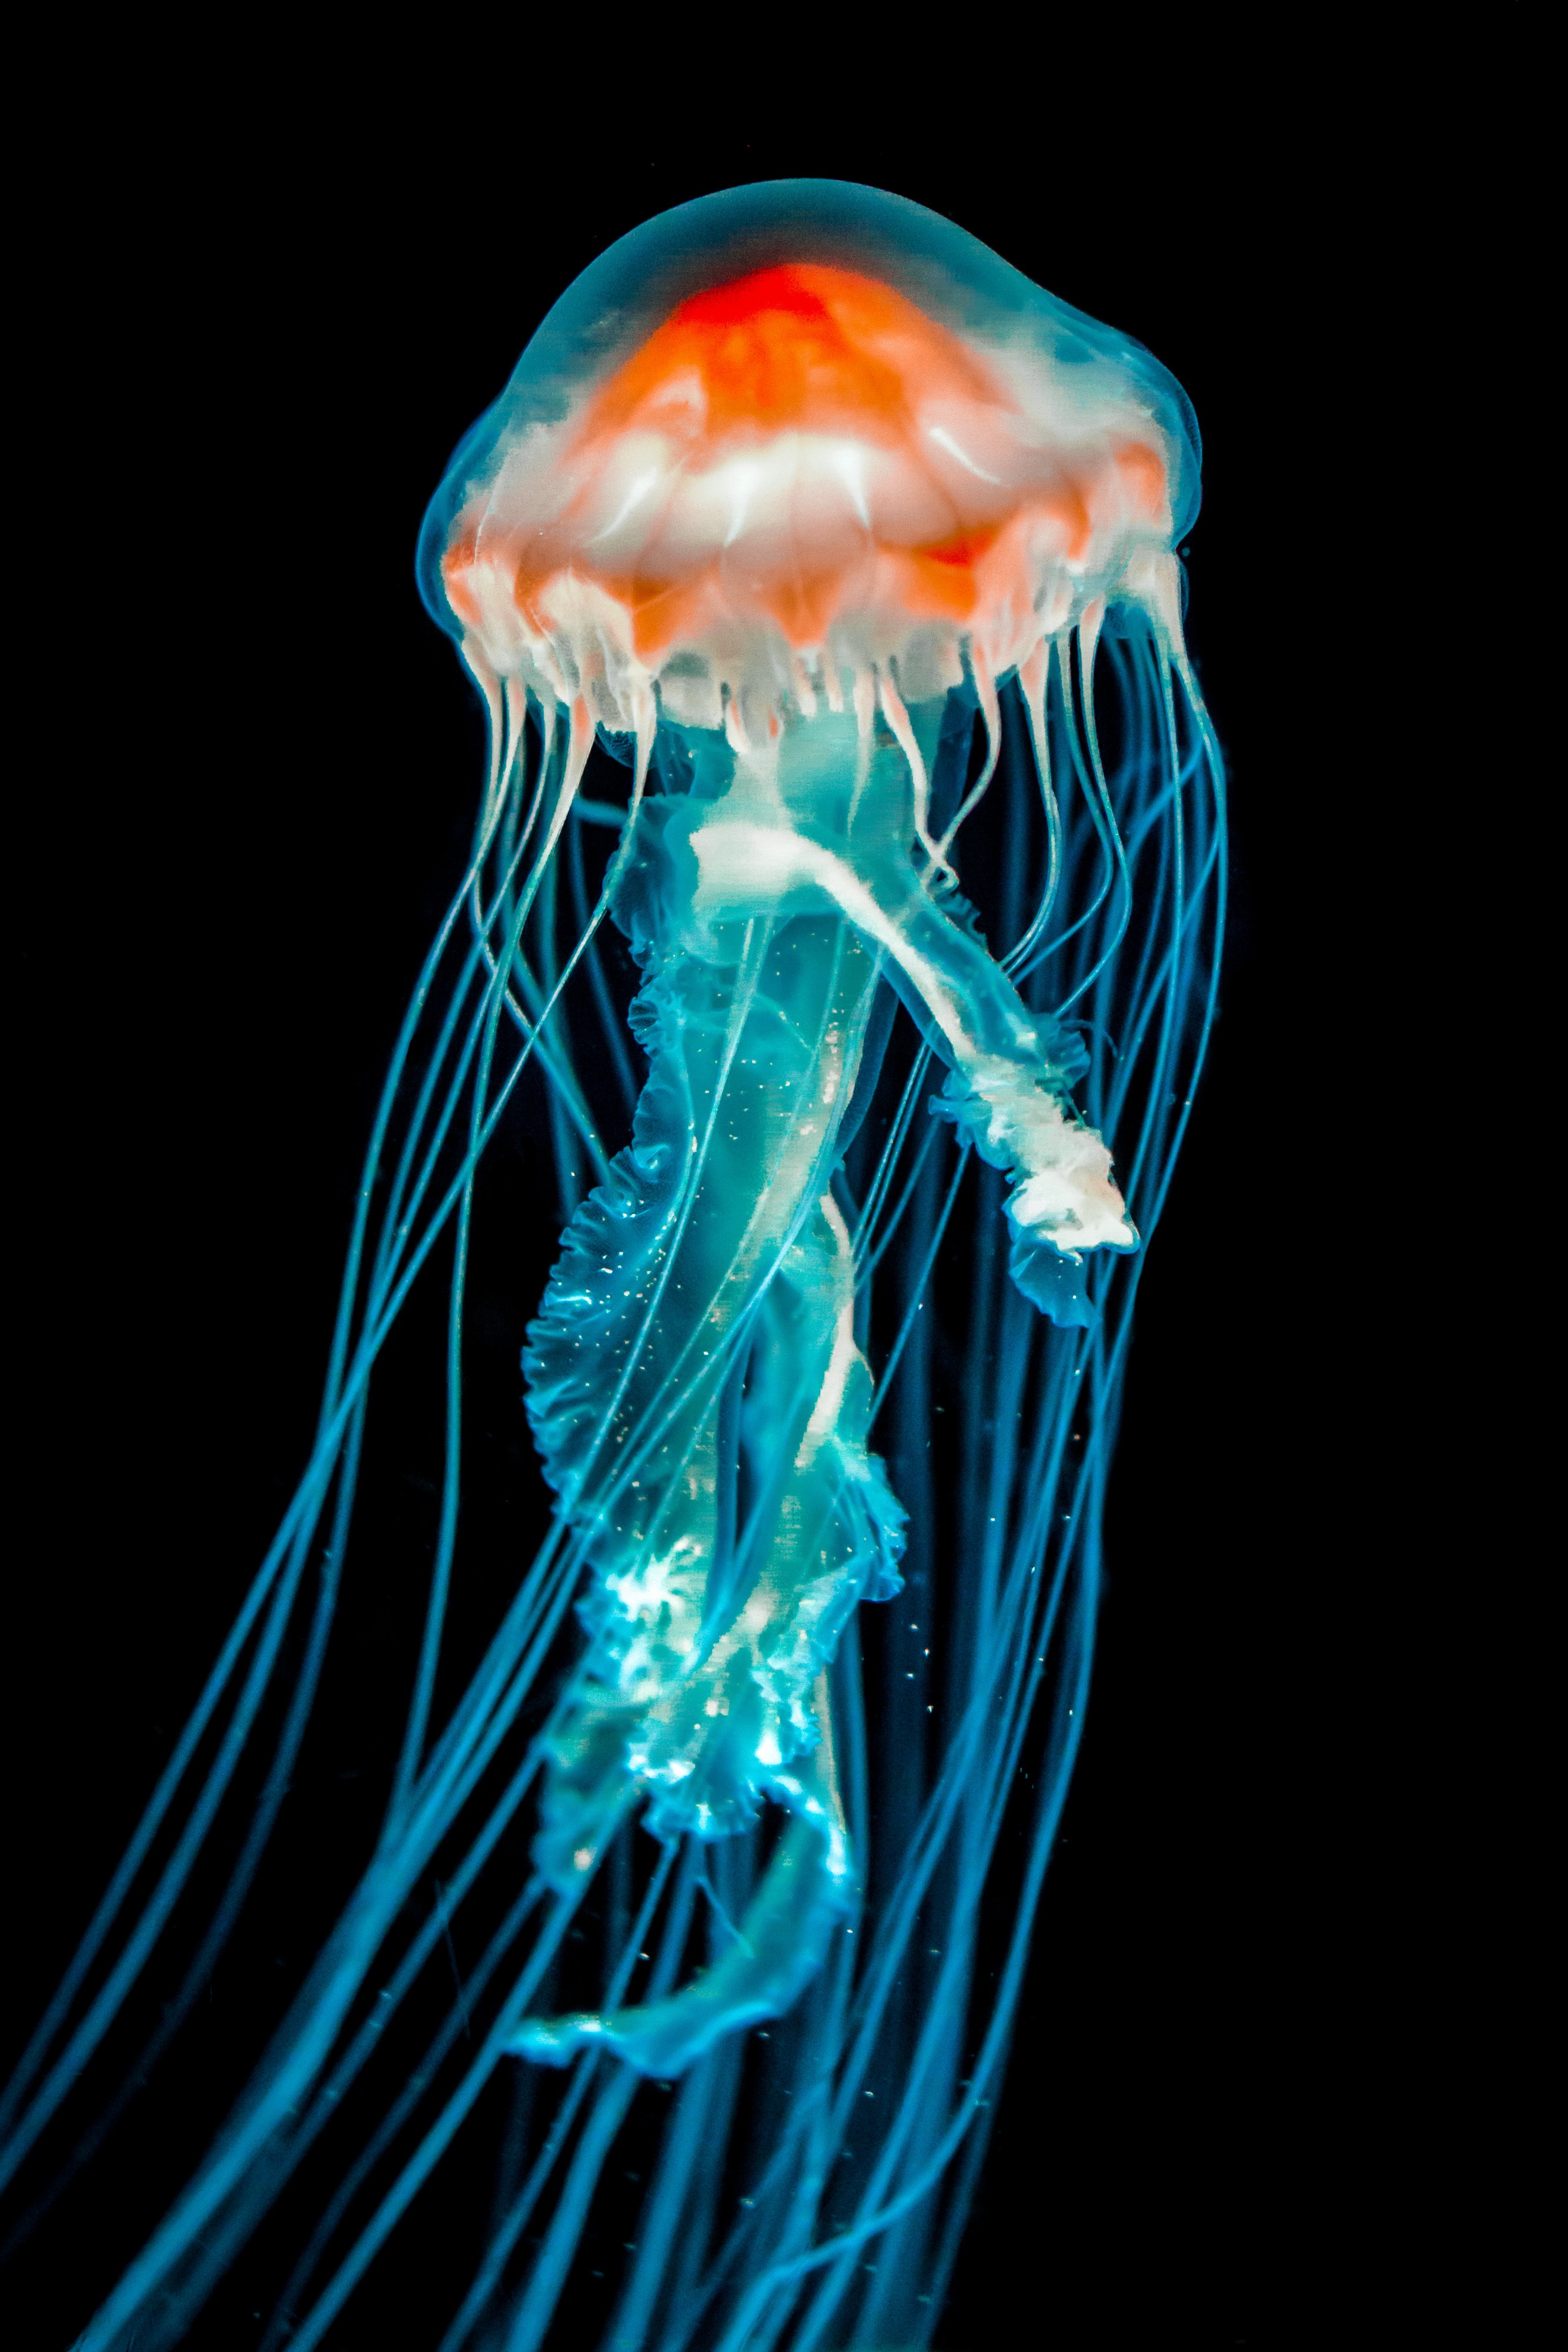 jellyfish, tentacle, dark, animals, black, underwater world cellphone